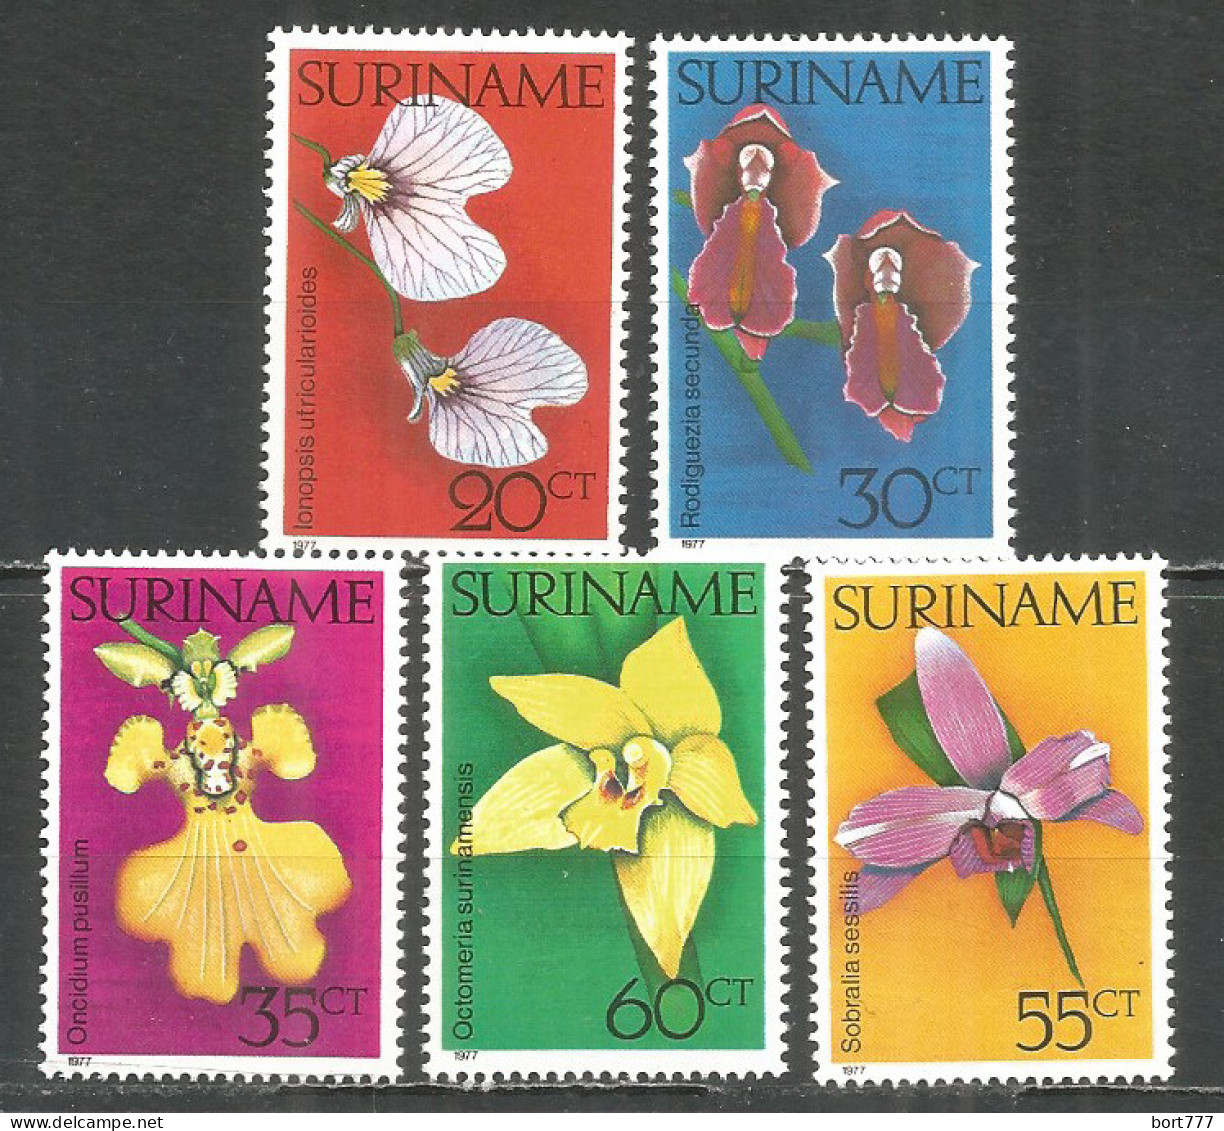 Surinam 1977 Mint Stamps Set MNH (**) Flowers - Suriname